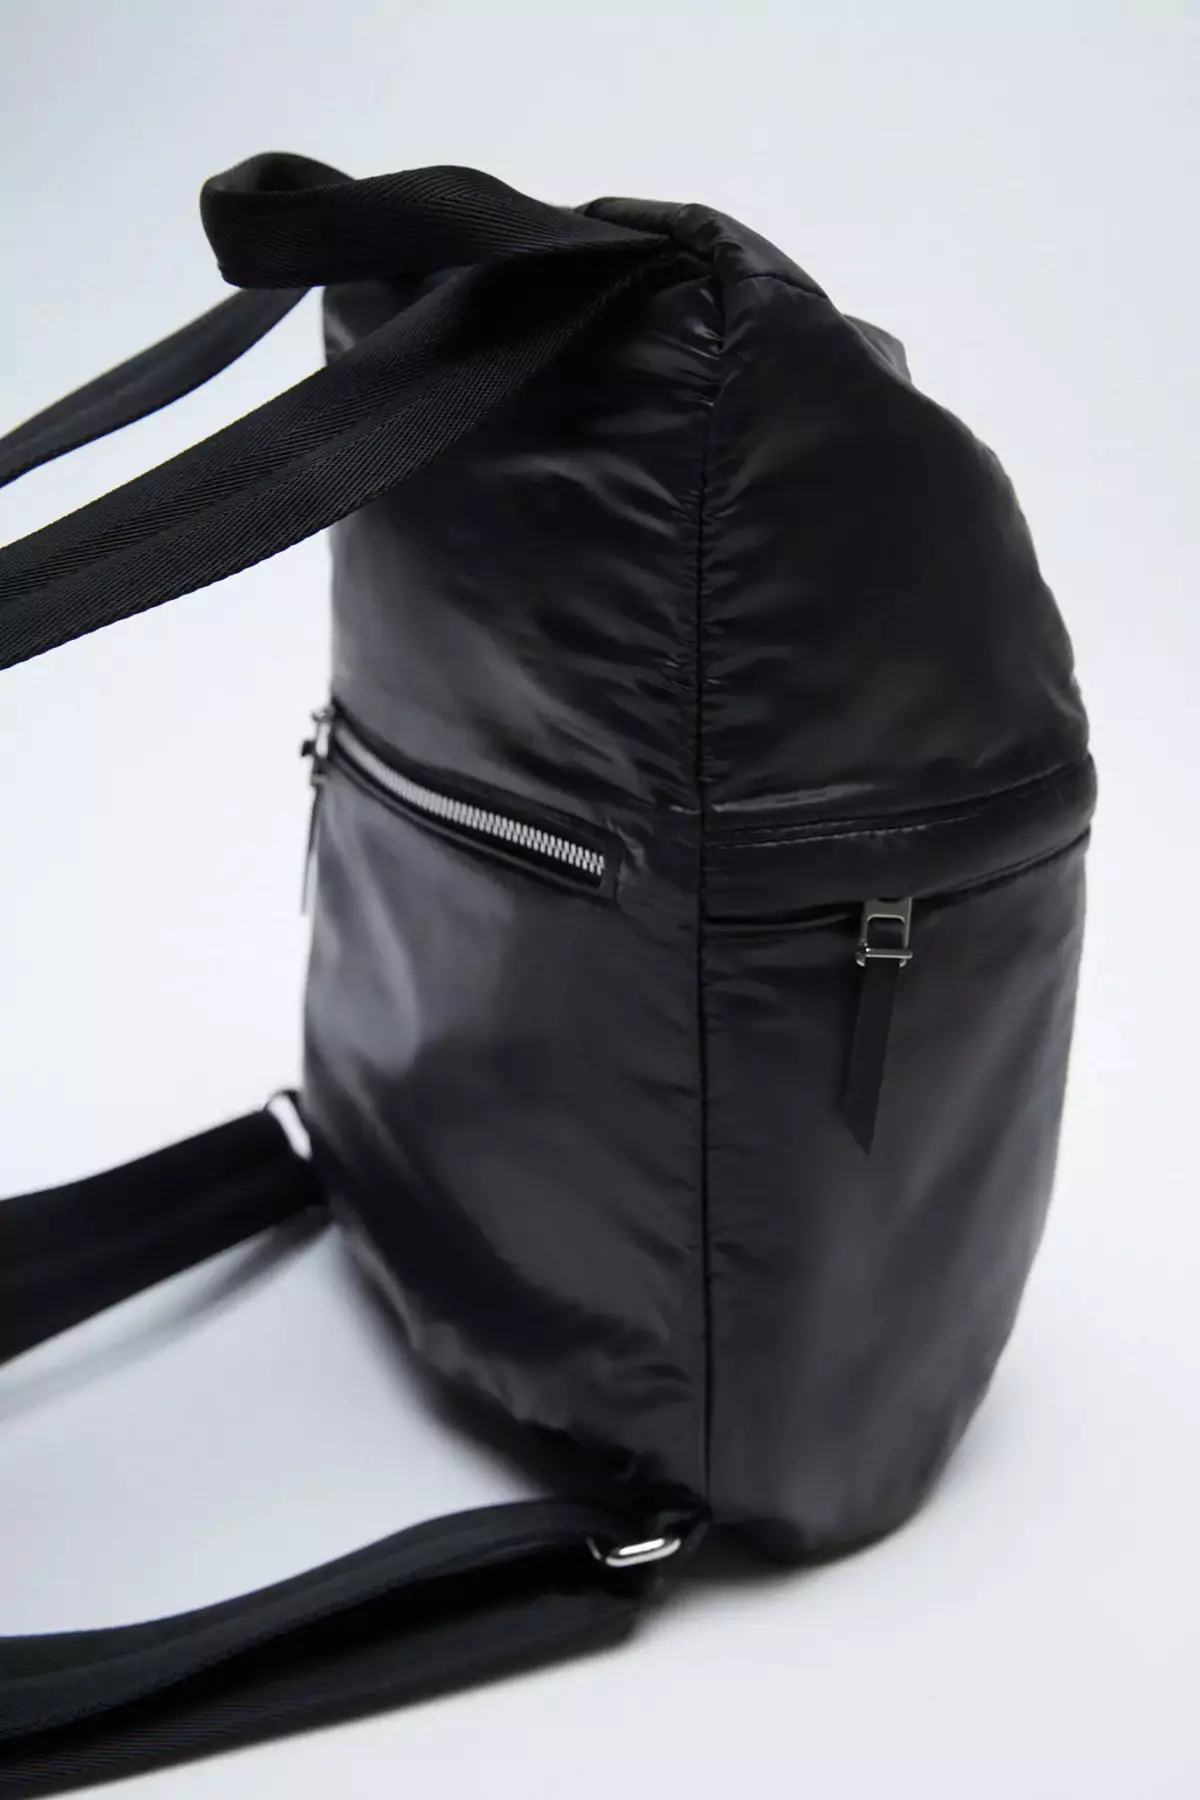 Zara backpacks: ຜູ້ຍິງສີດໍາ, ເດັກນ້ອຍສໍາລັບເດັກນ້ອຍ, ສີຂີ້ເຖົ່າແລະສີແດງ, ພ້ອມທັງແບບກະເປົາຂອງກະເປົາຈາກບໍລິສັດ. ສິ່ງທີ່ດີທີ່ສຸດທີ່ຈະໃສ່? 15437_13